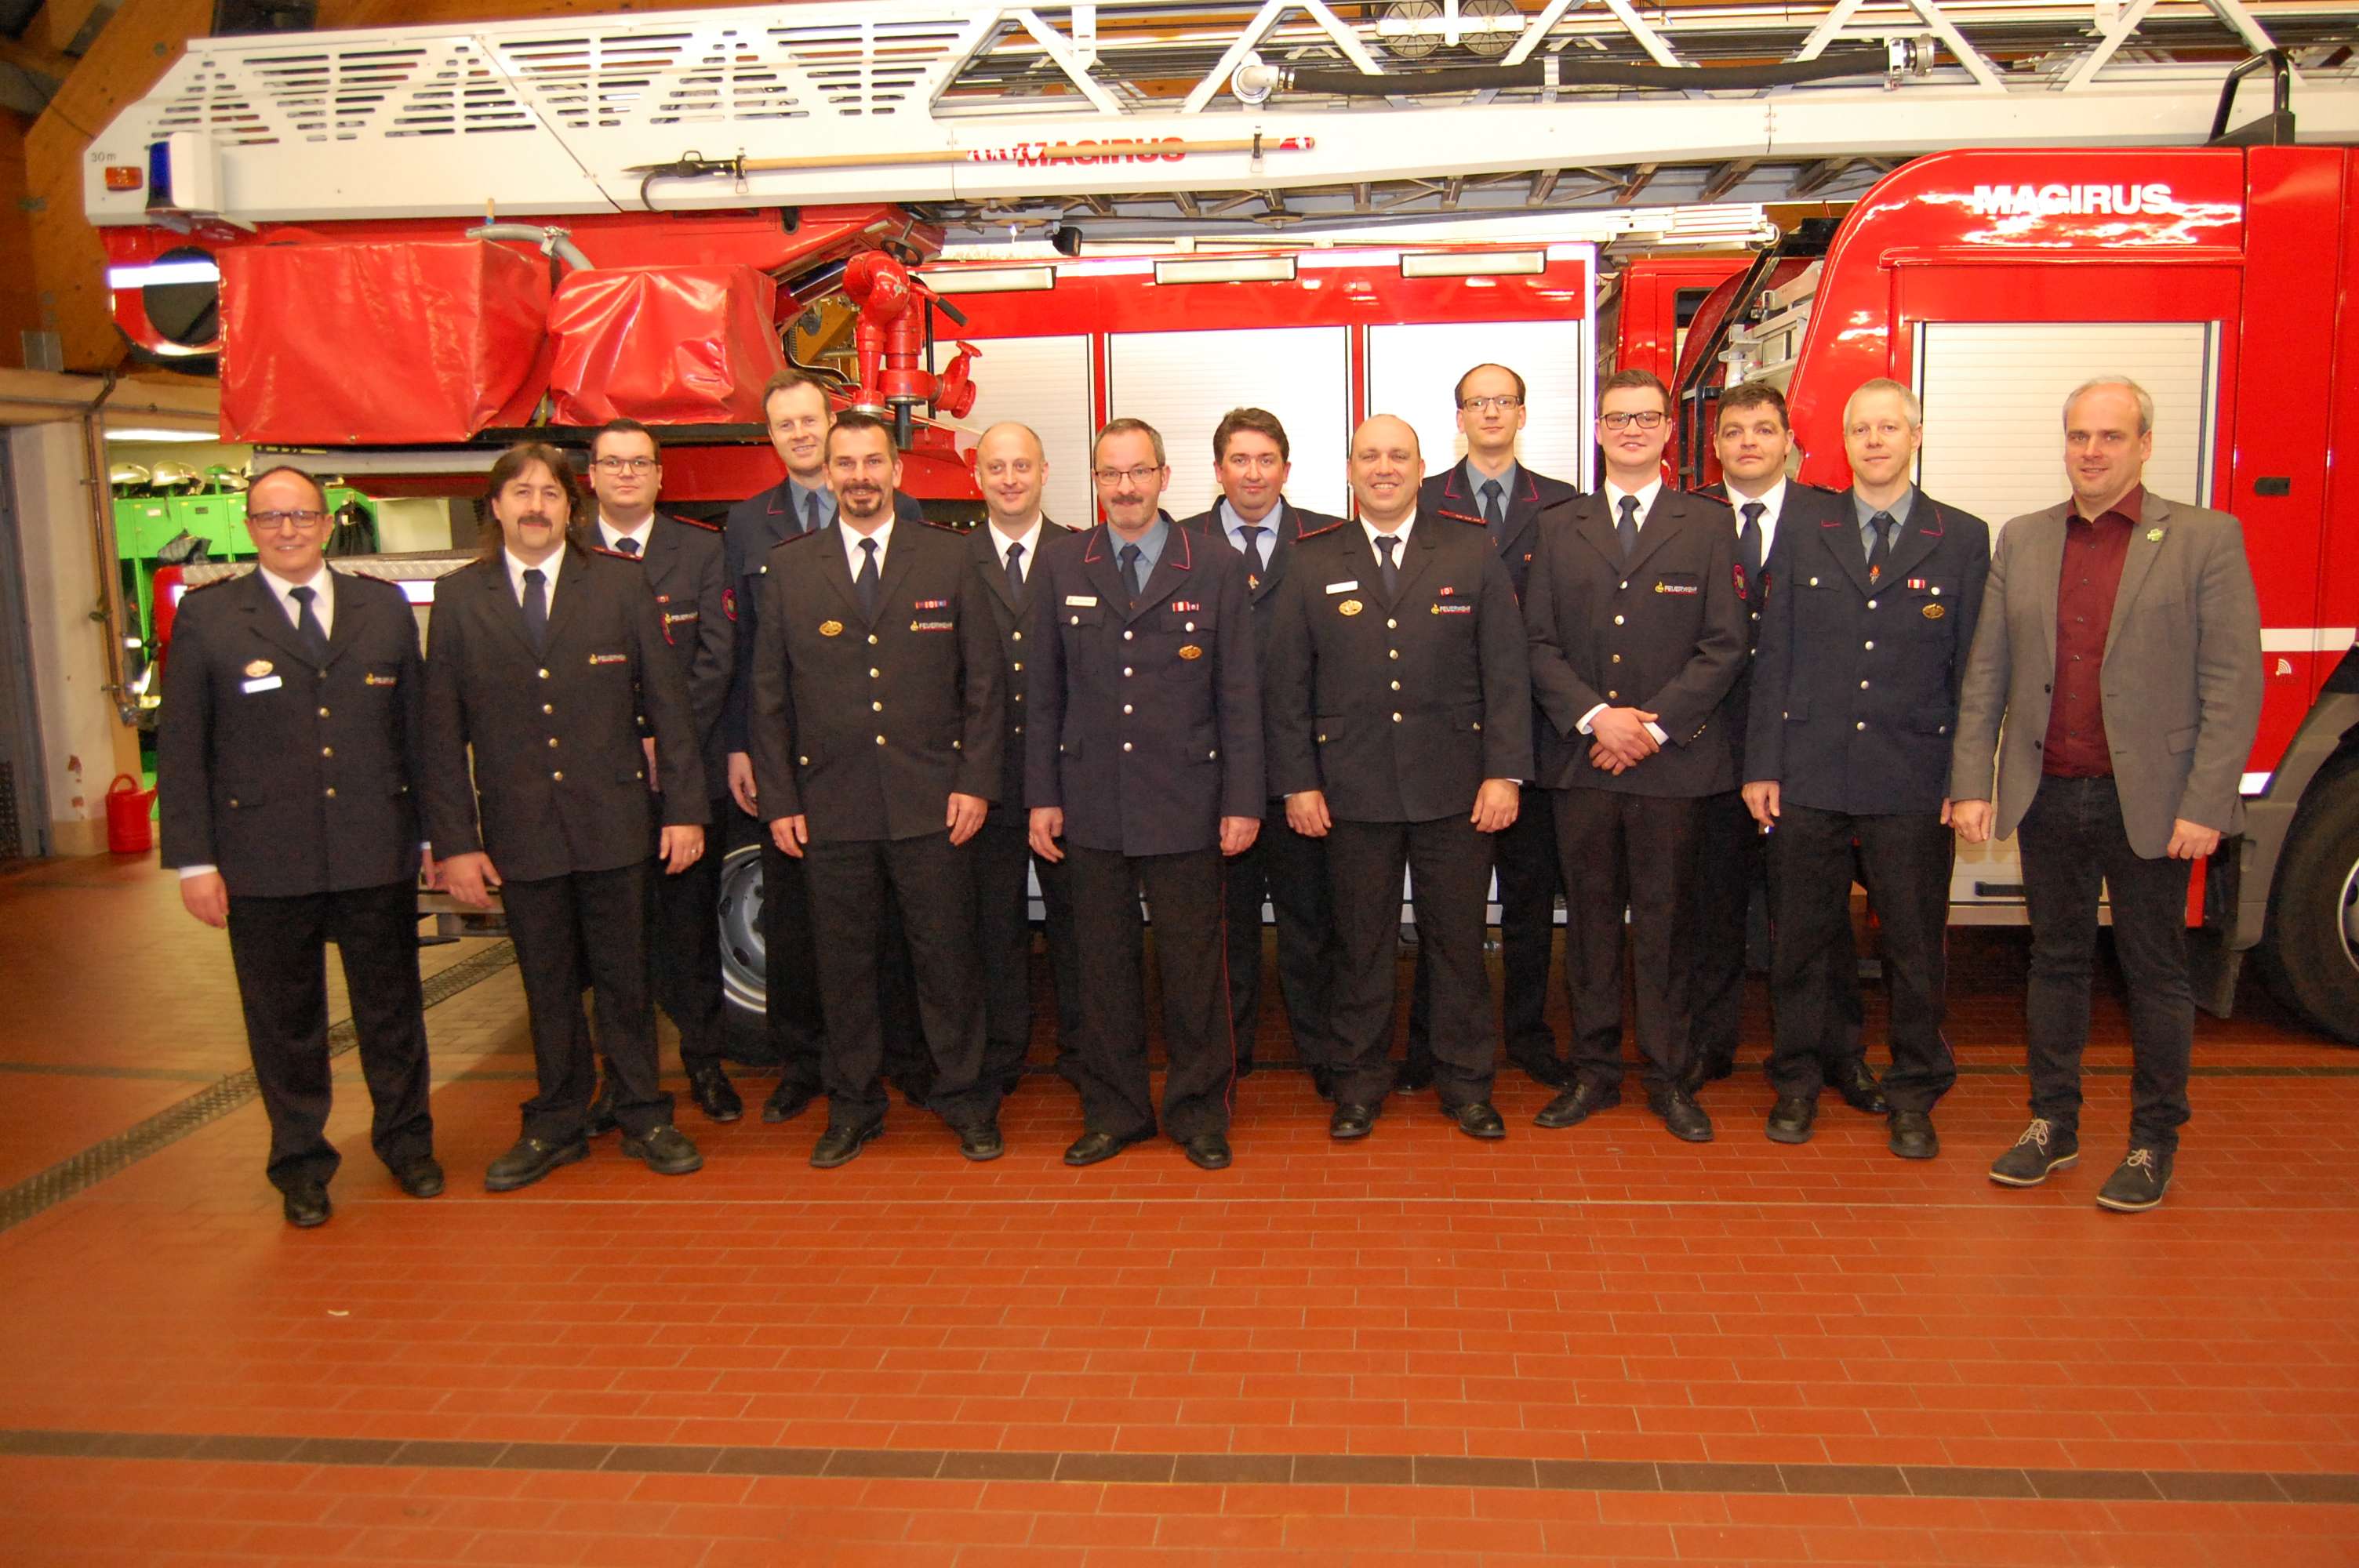 Abteilungskommandant Rainer Zillinger links und Bürgermeister Matthias Leyn rechts sind stolz auf die Einsatzbereitschaft und das ehrenamtliche Engagement der Feuerwehrleute in der Abteilung Schömberg. 